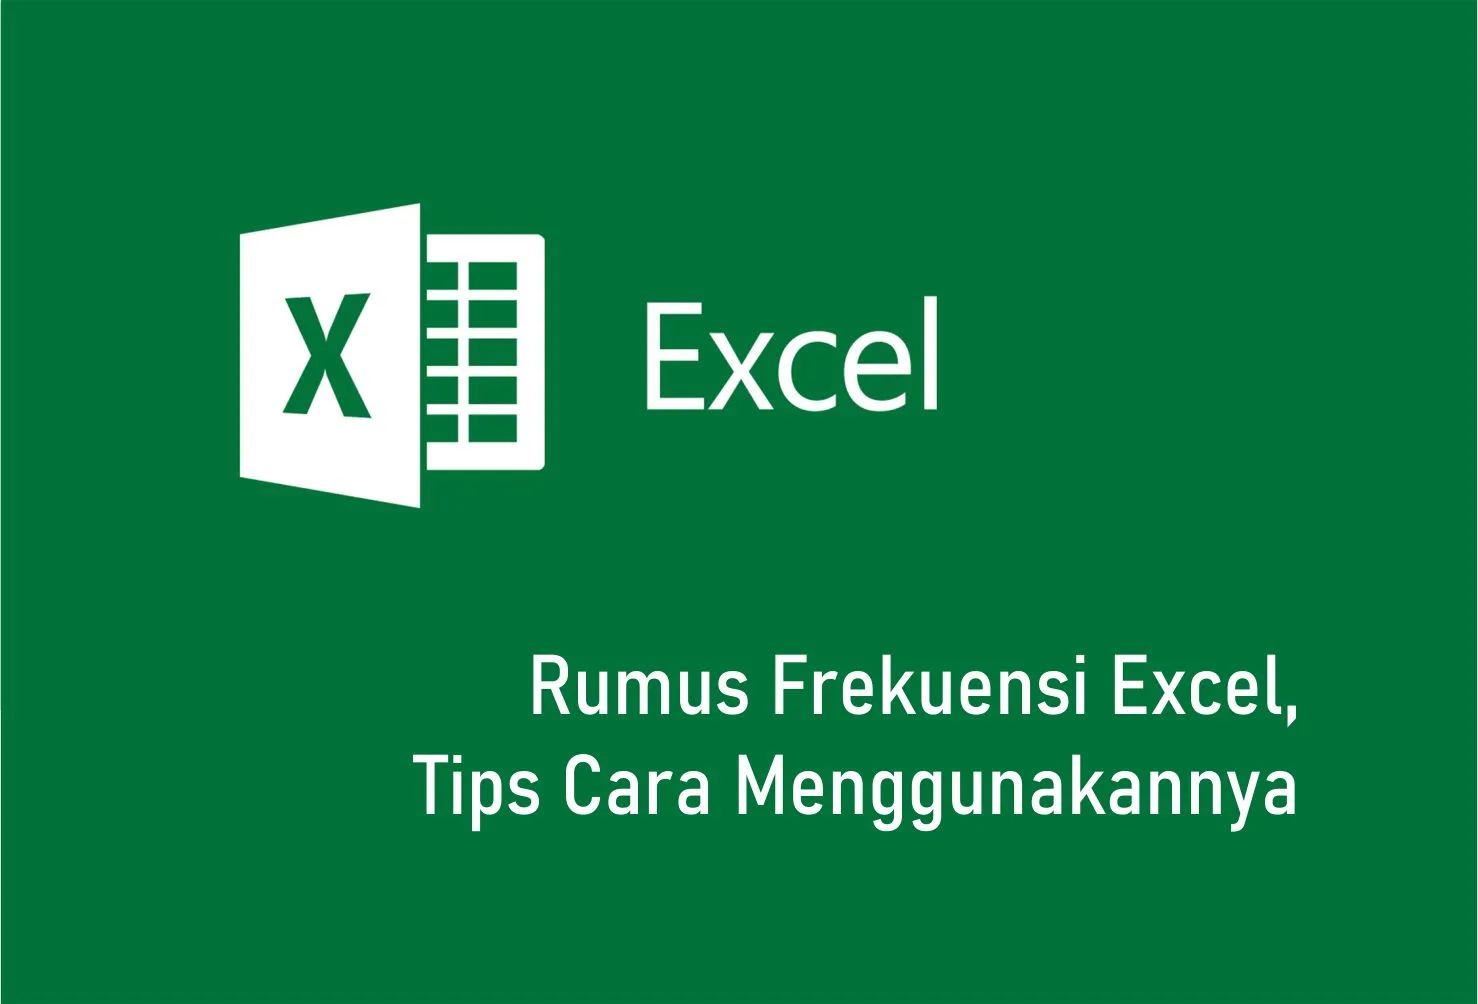 Rumus Frekuensi Excel